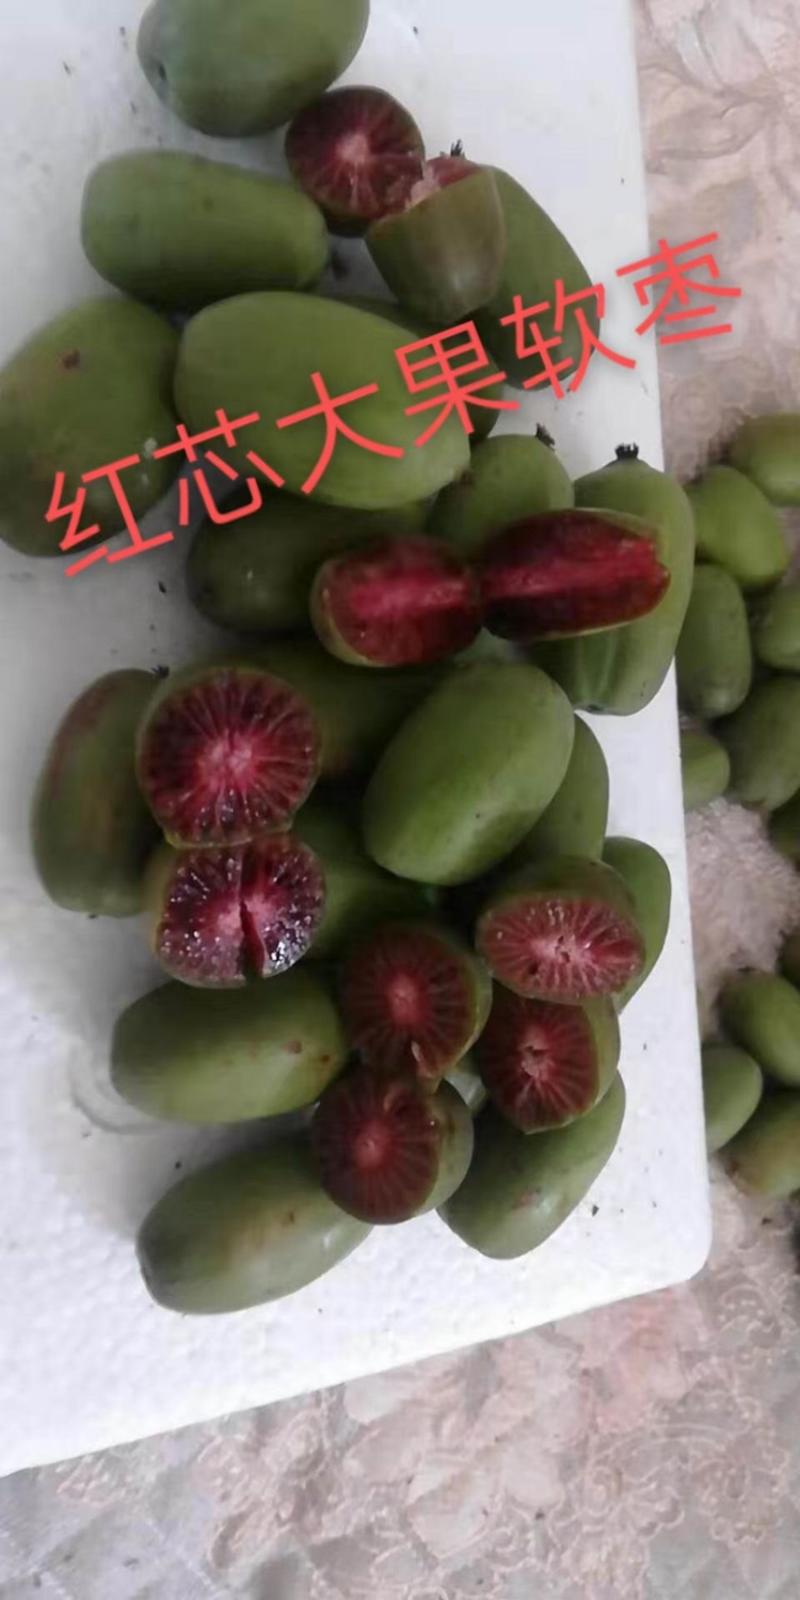 软枣猕猴桃苗一级好苗品种树苗耐寒品种